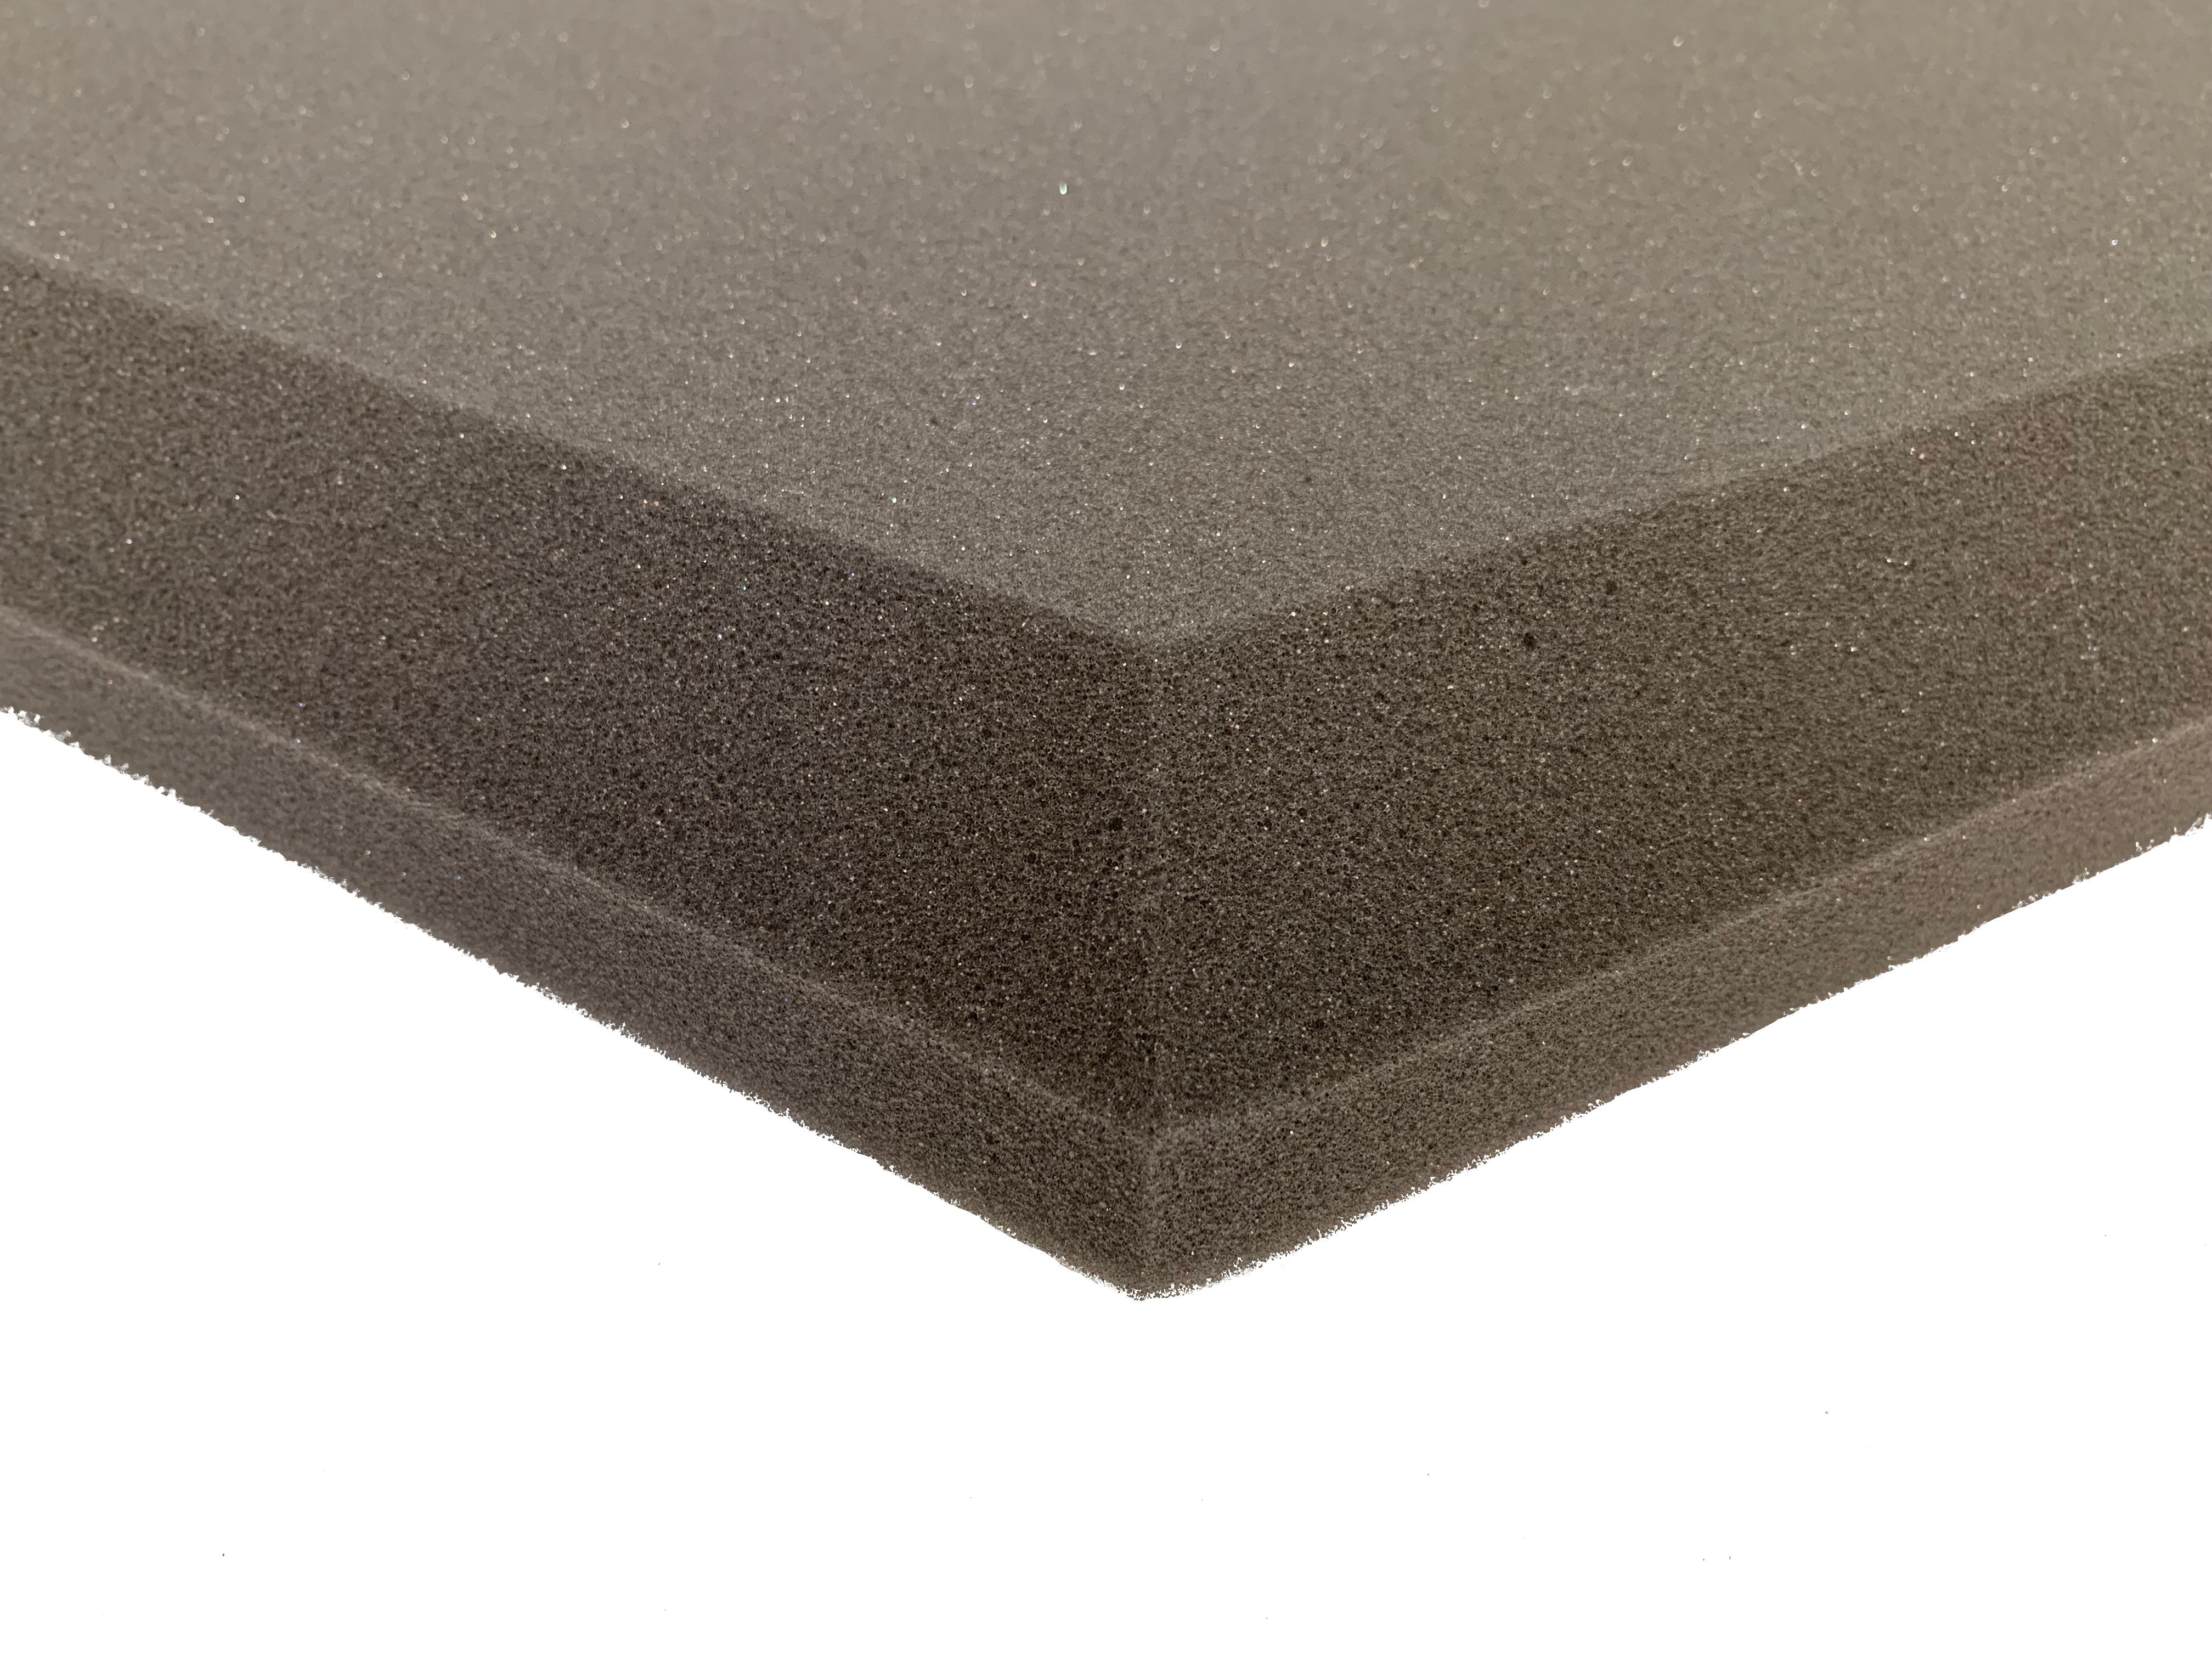 Hexatile2 Acoustic Studio Foam Tile Pack - Advanced Acoustics